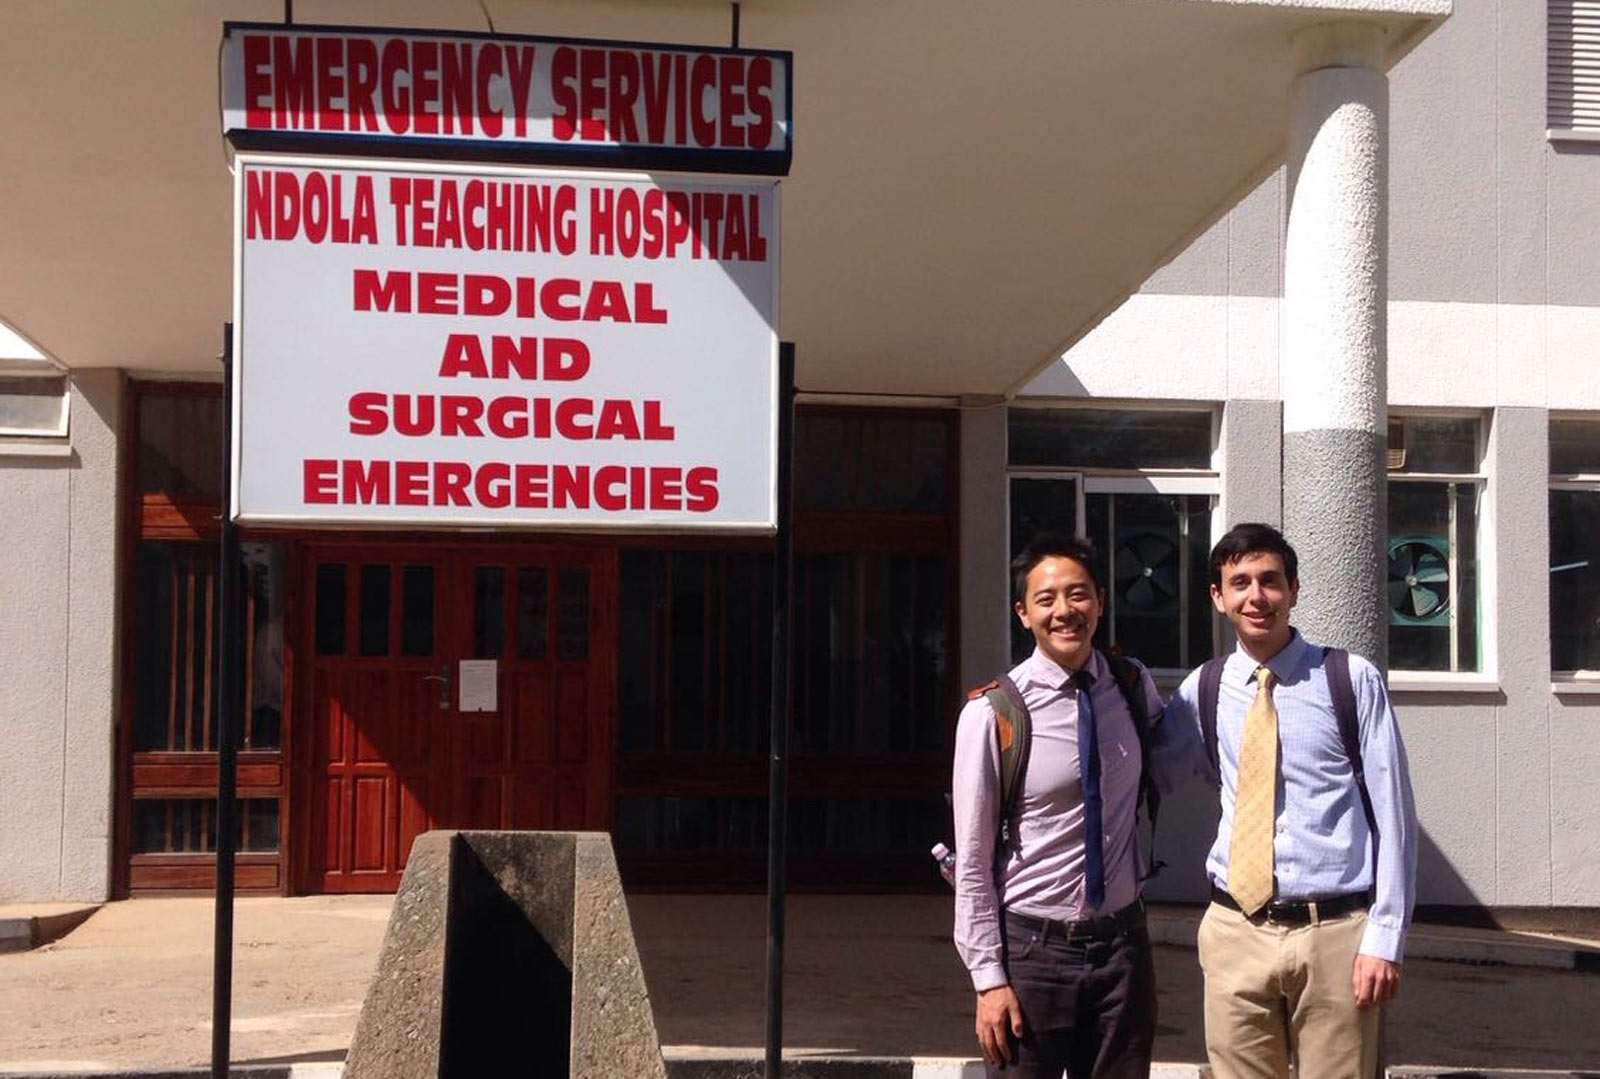 Medical Students David Wang and Darren Sultan